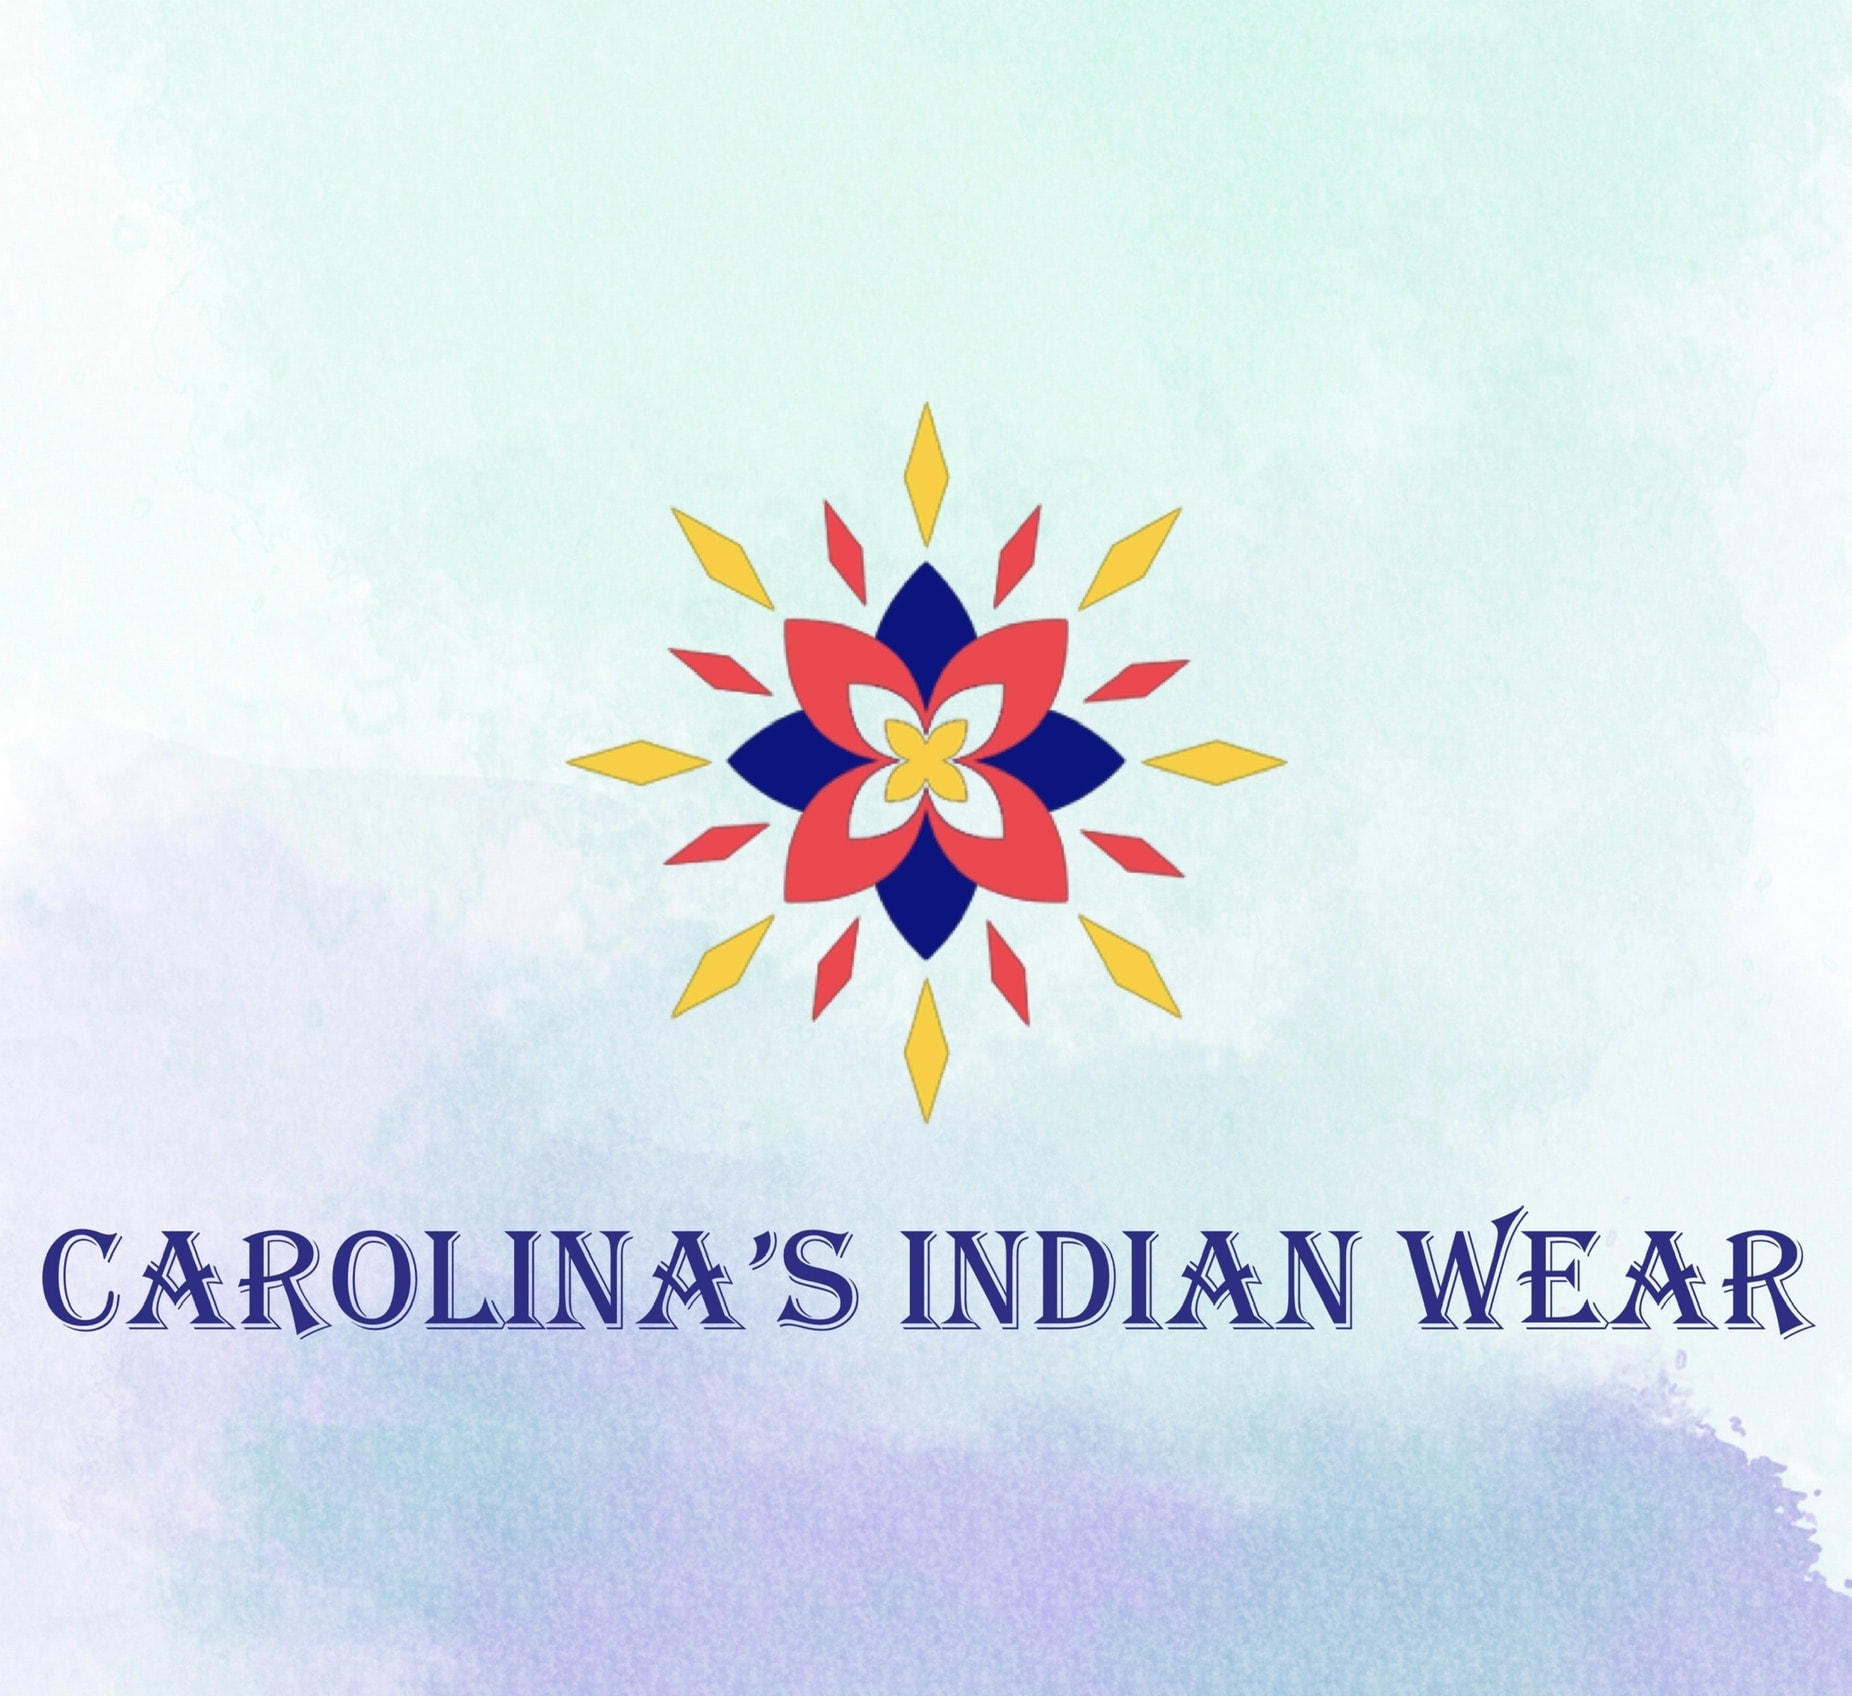 Carolina’s Indian Wear